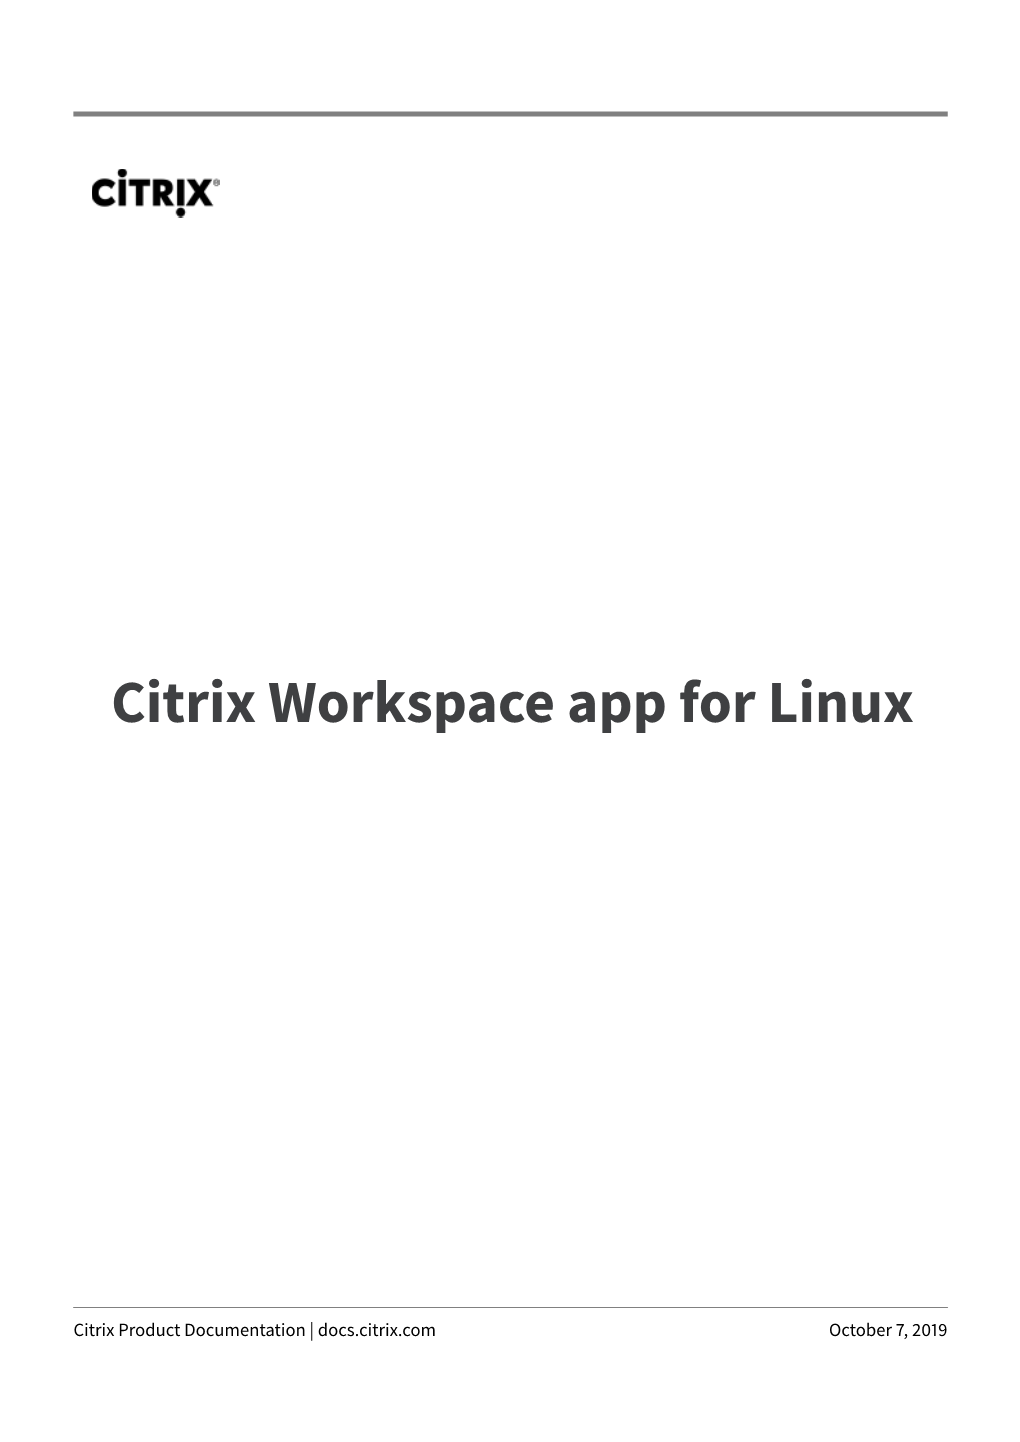 Citrix Workspace App for Linux